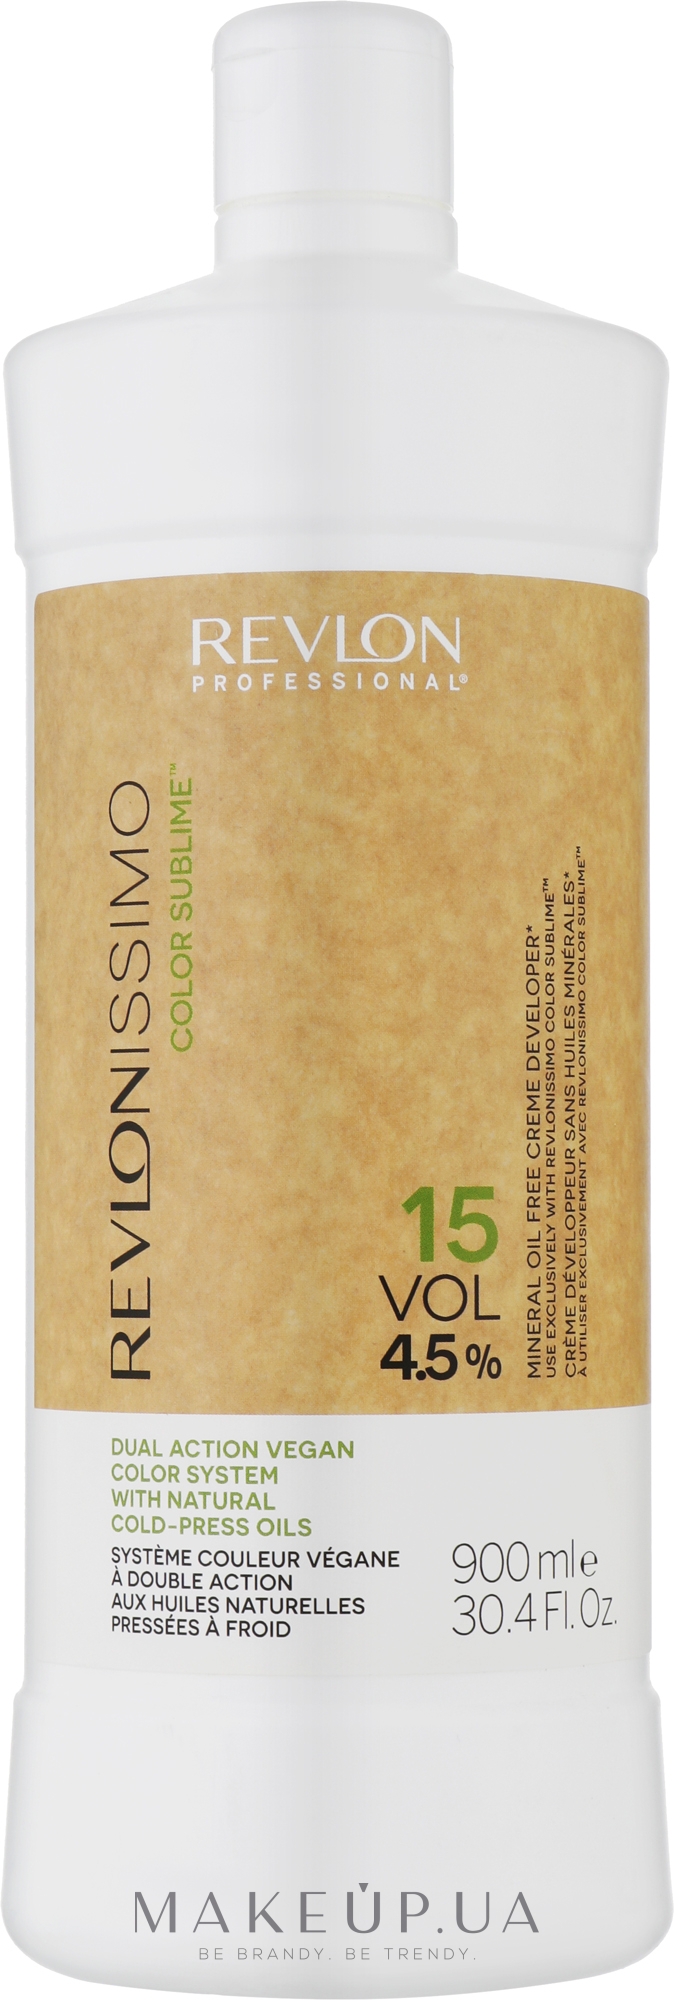 Живильний веганський кремоподібний окислювач - Revlon Revlonissimo Color Sublime Mineral Oil Free Creme Developer 15 Vol 4,5% — фото 900ml